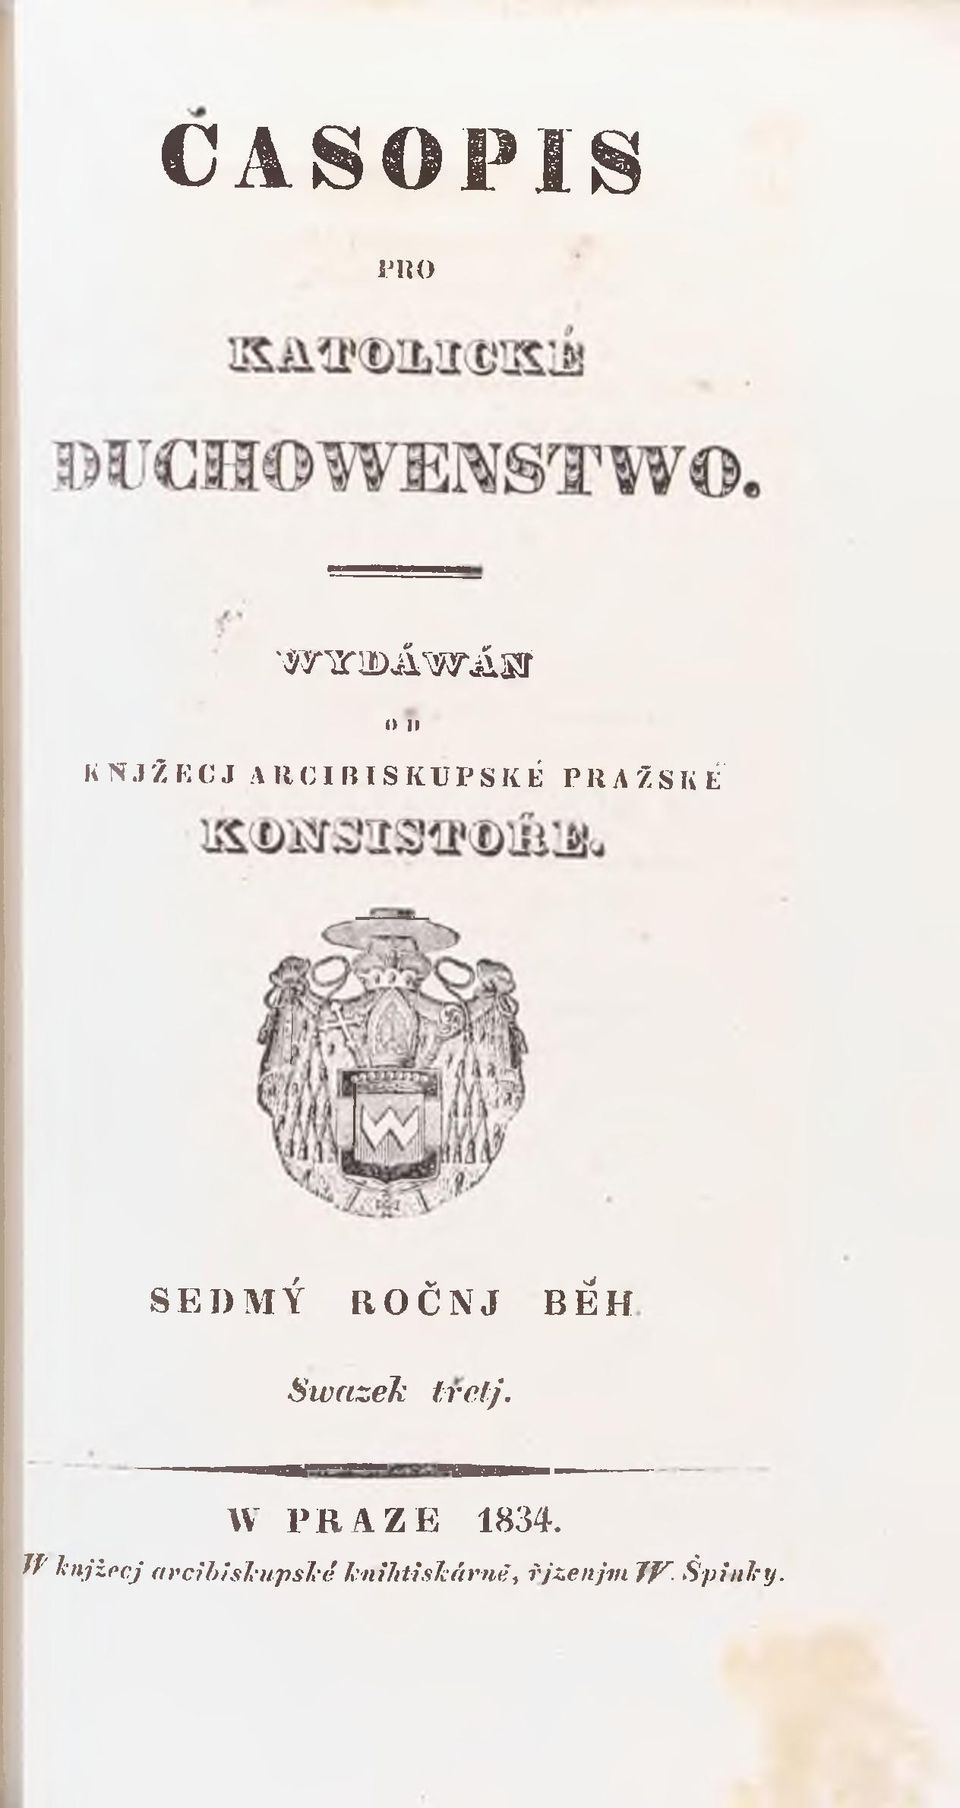 N J B Ě H SwnzeJc tref/. W P R A Z E 1834.